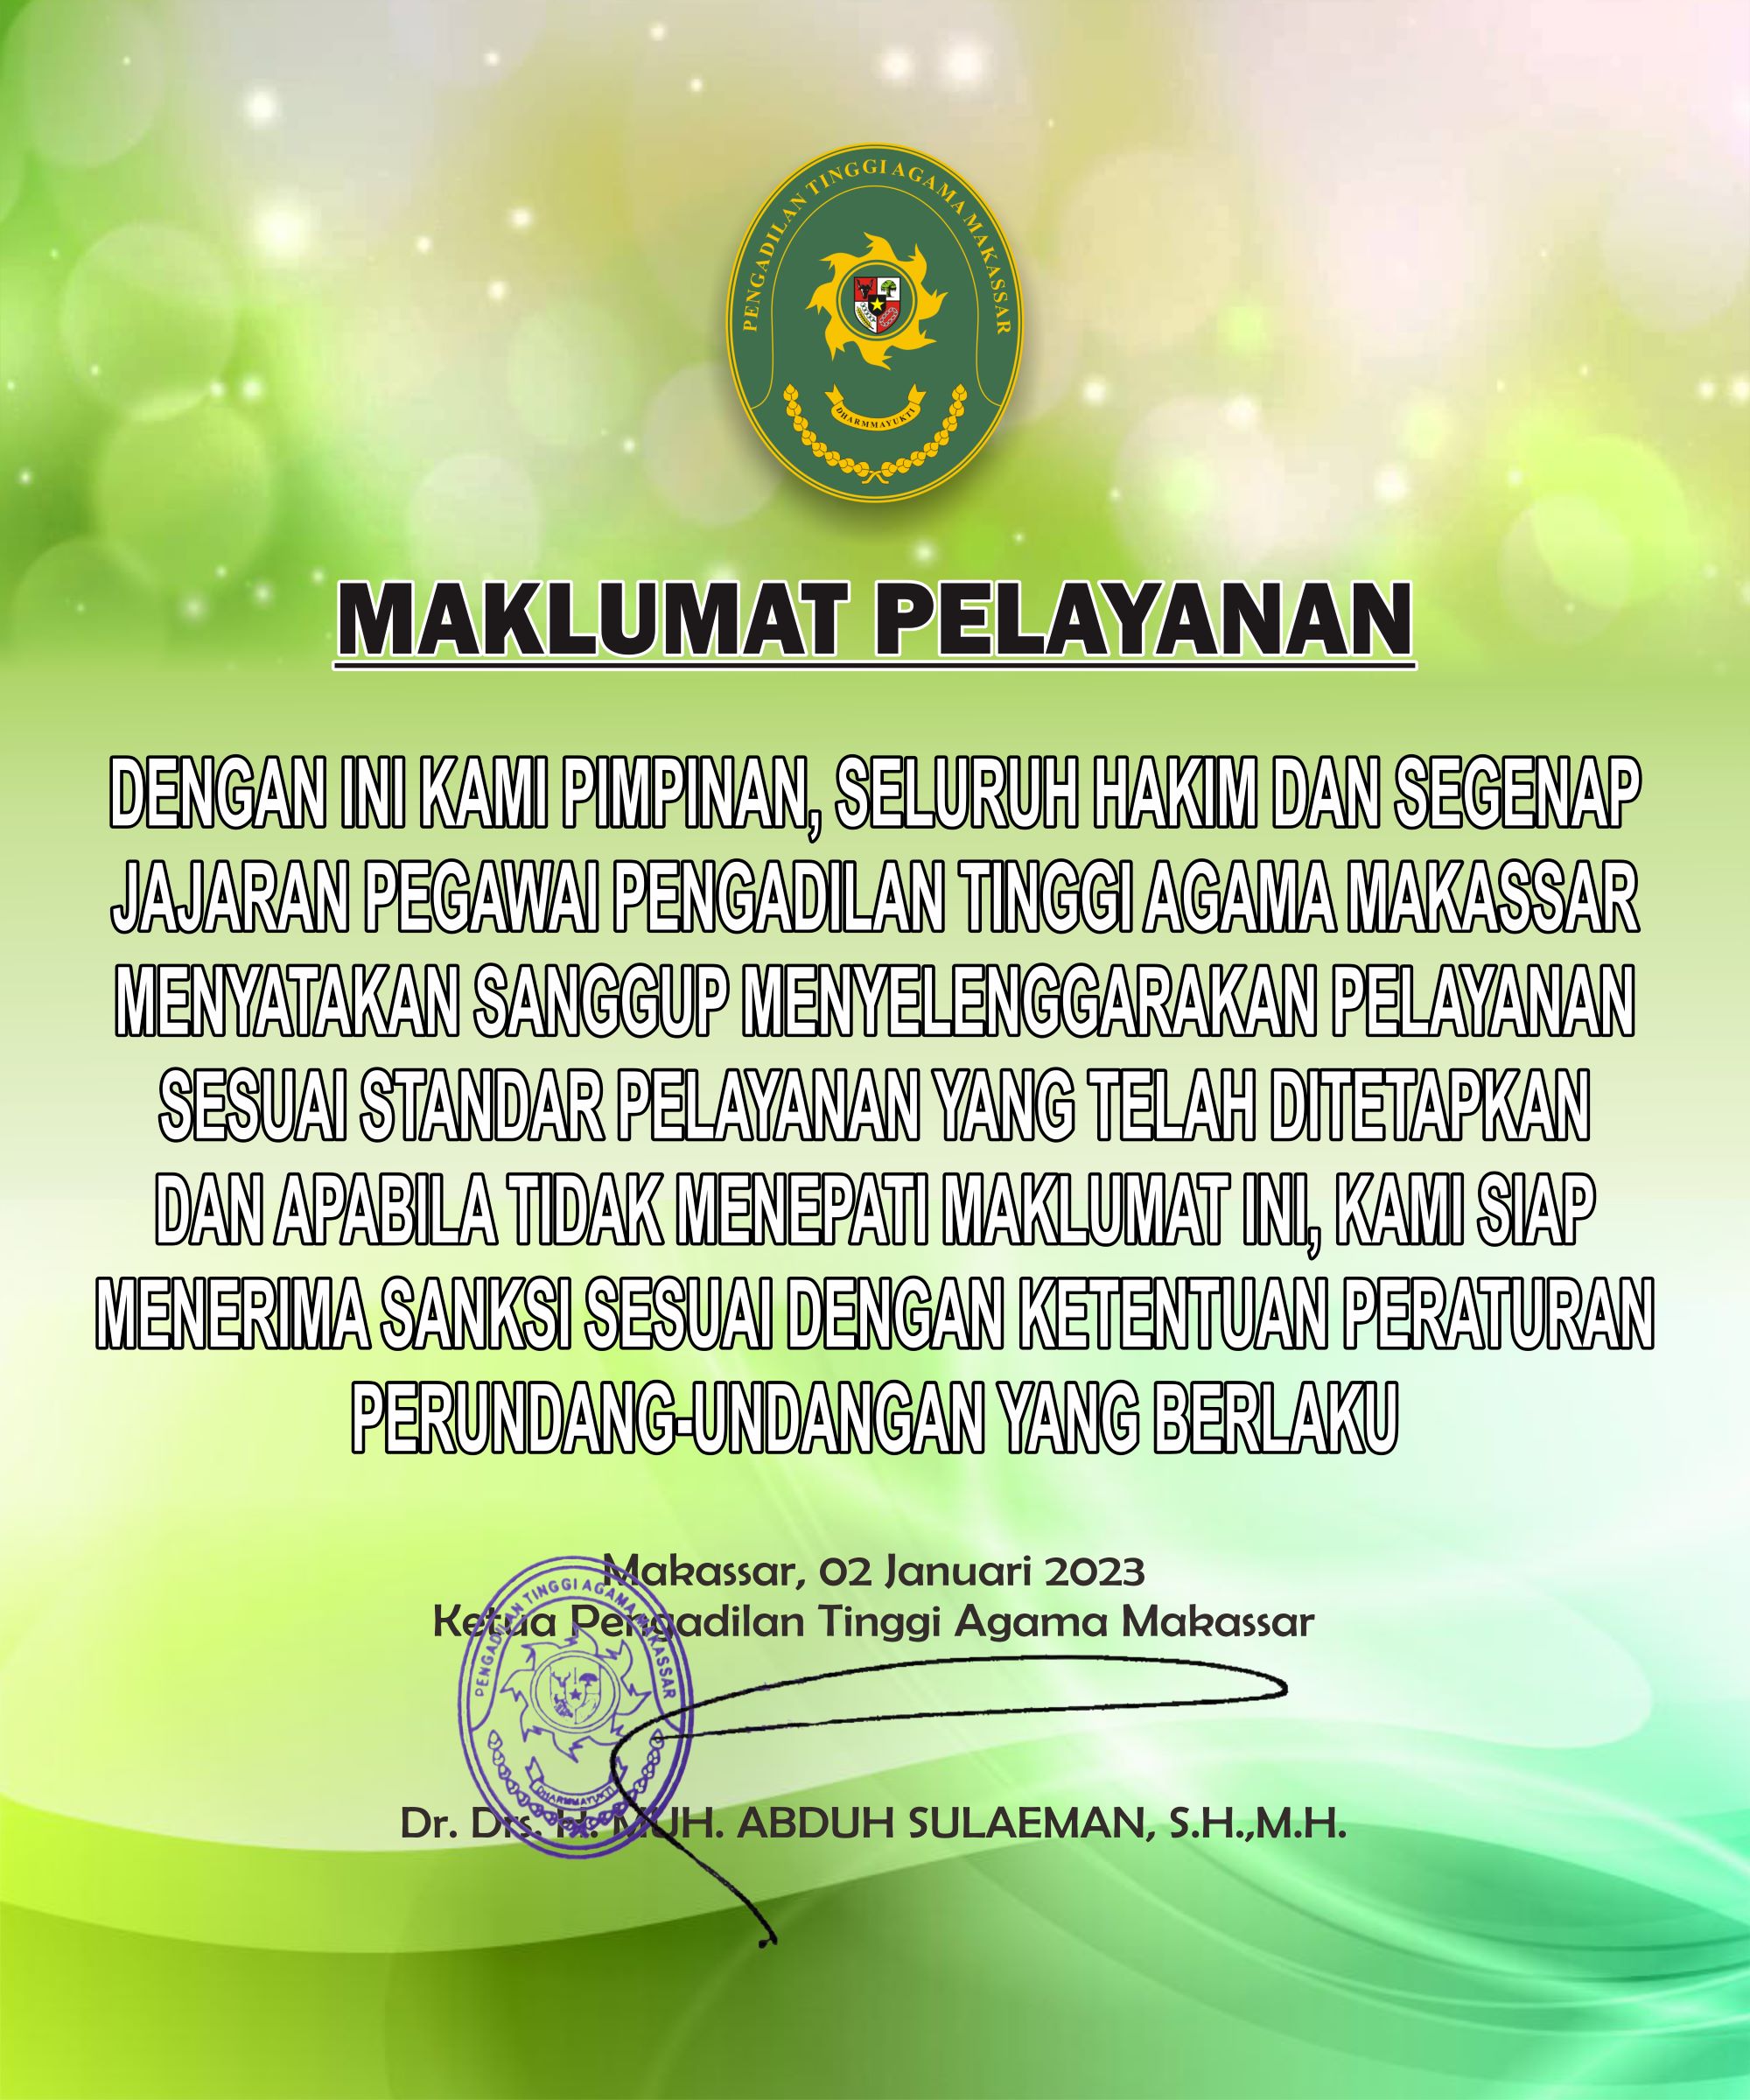 Maklumat Pelayanan PTA Makassar